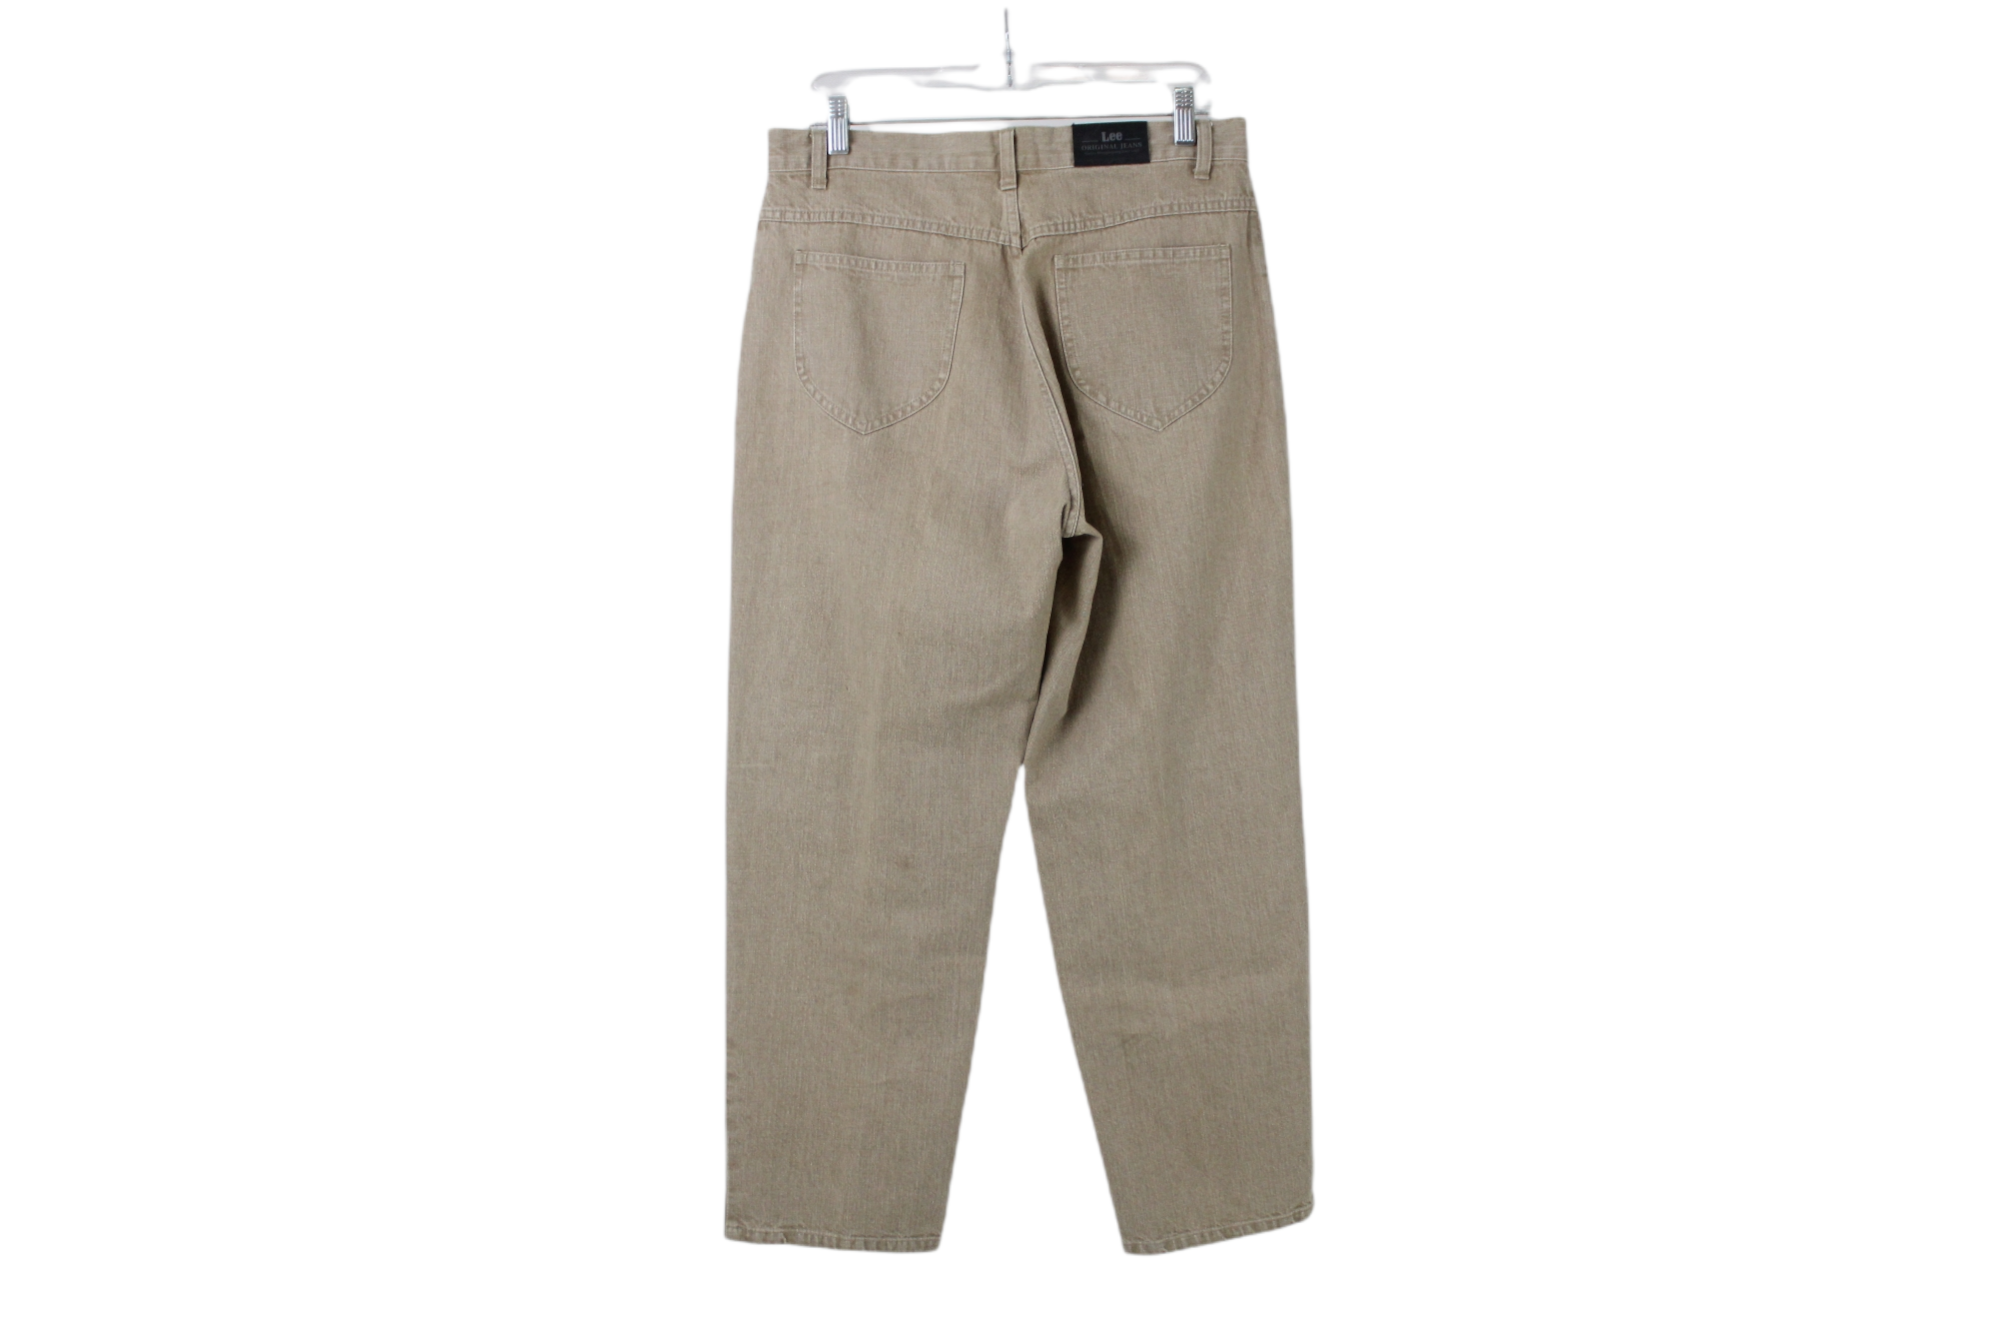 Lee Original Jeans Tan Pants | 12 Petite